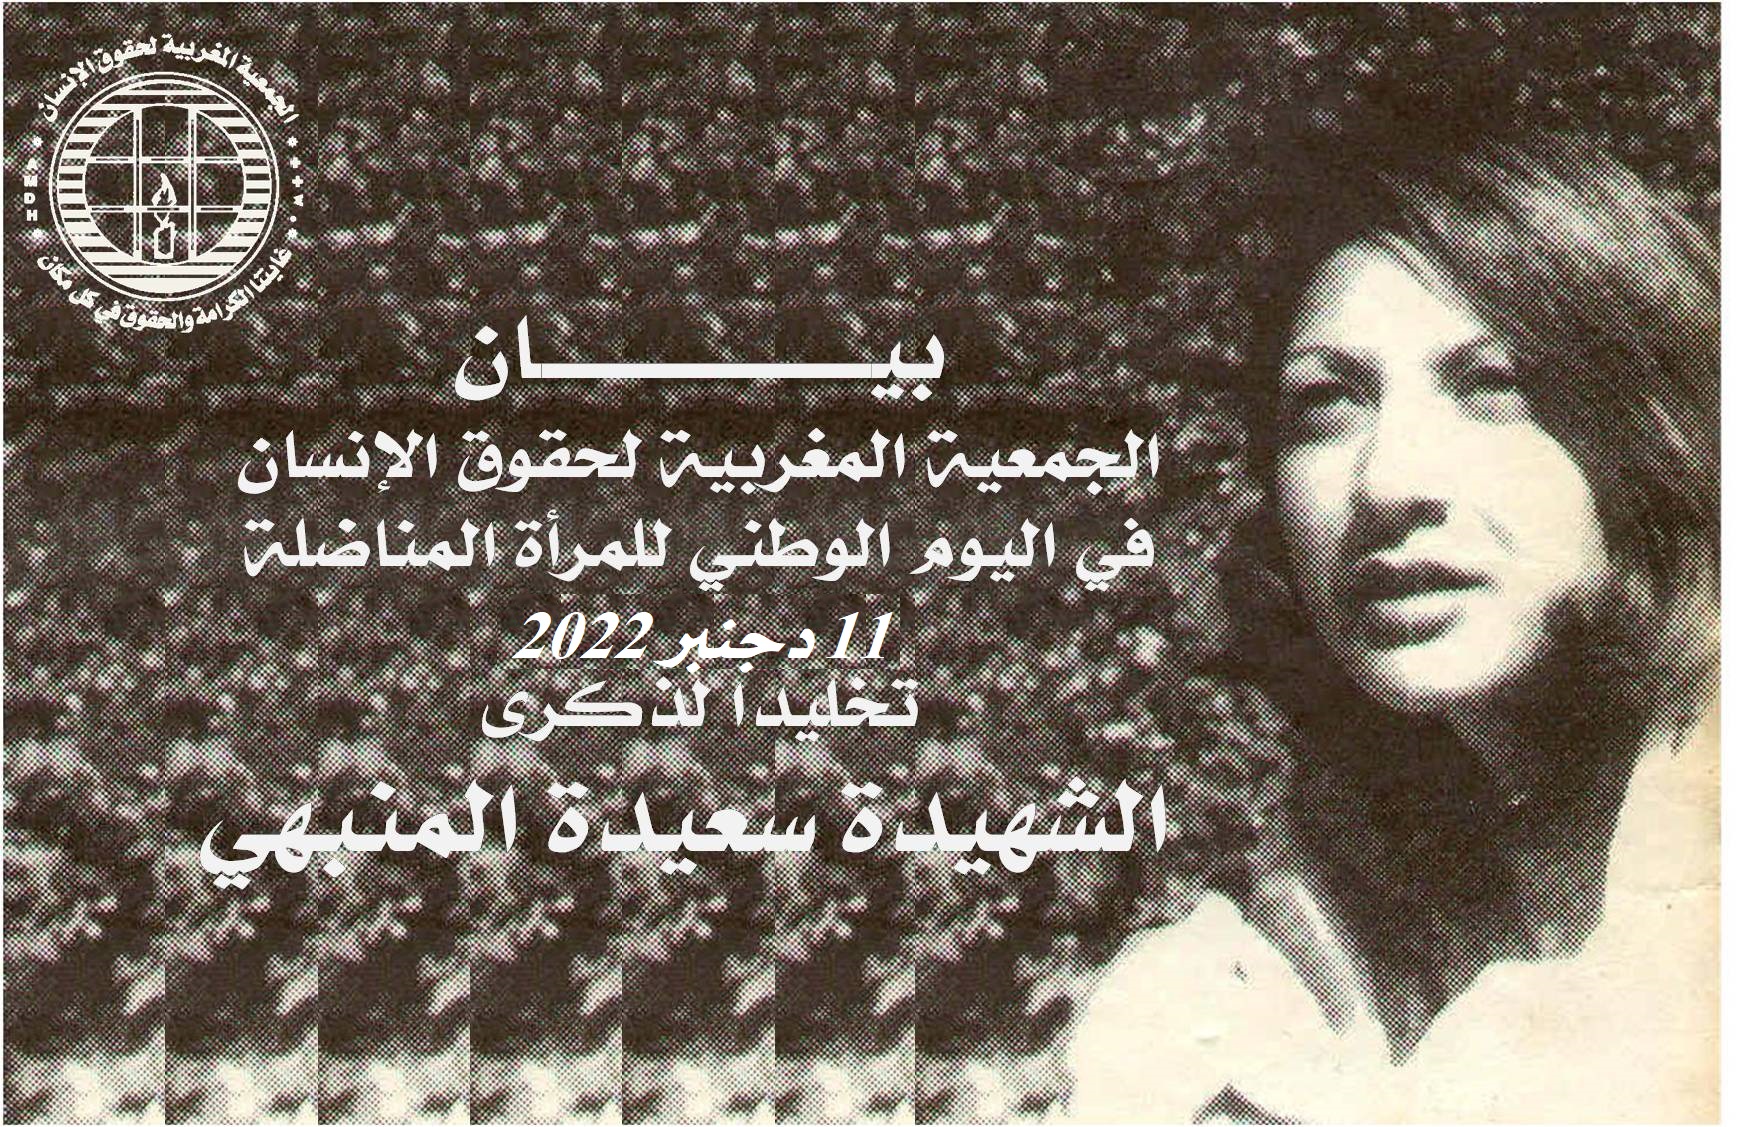  بيان الجمعية المغربية لحقوق الإنسان في اليوم الوطني للمرأة المناضلة  تخليدا لذكرى الشهيدة سعيدة المنبهي